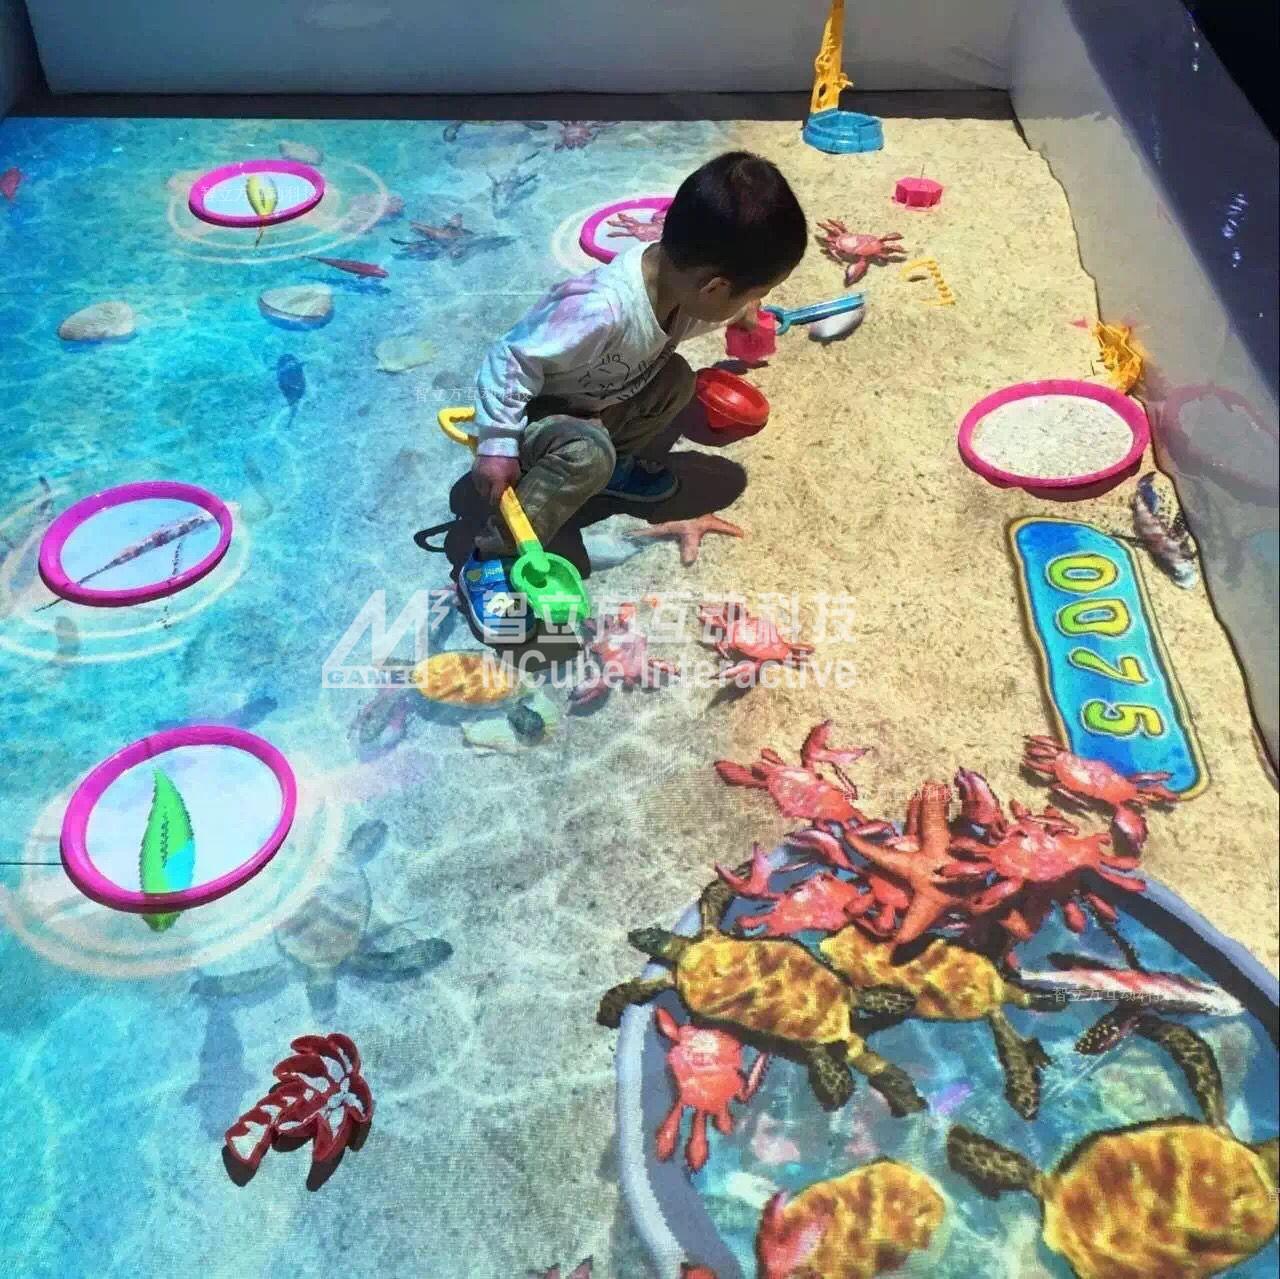 智立方互动投影游戏：儿童娱乐门店的升级利器！沙滩砸球